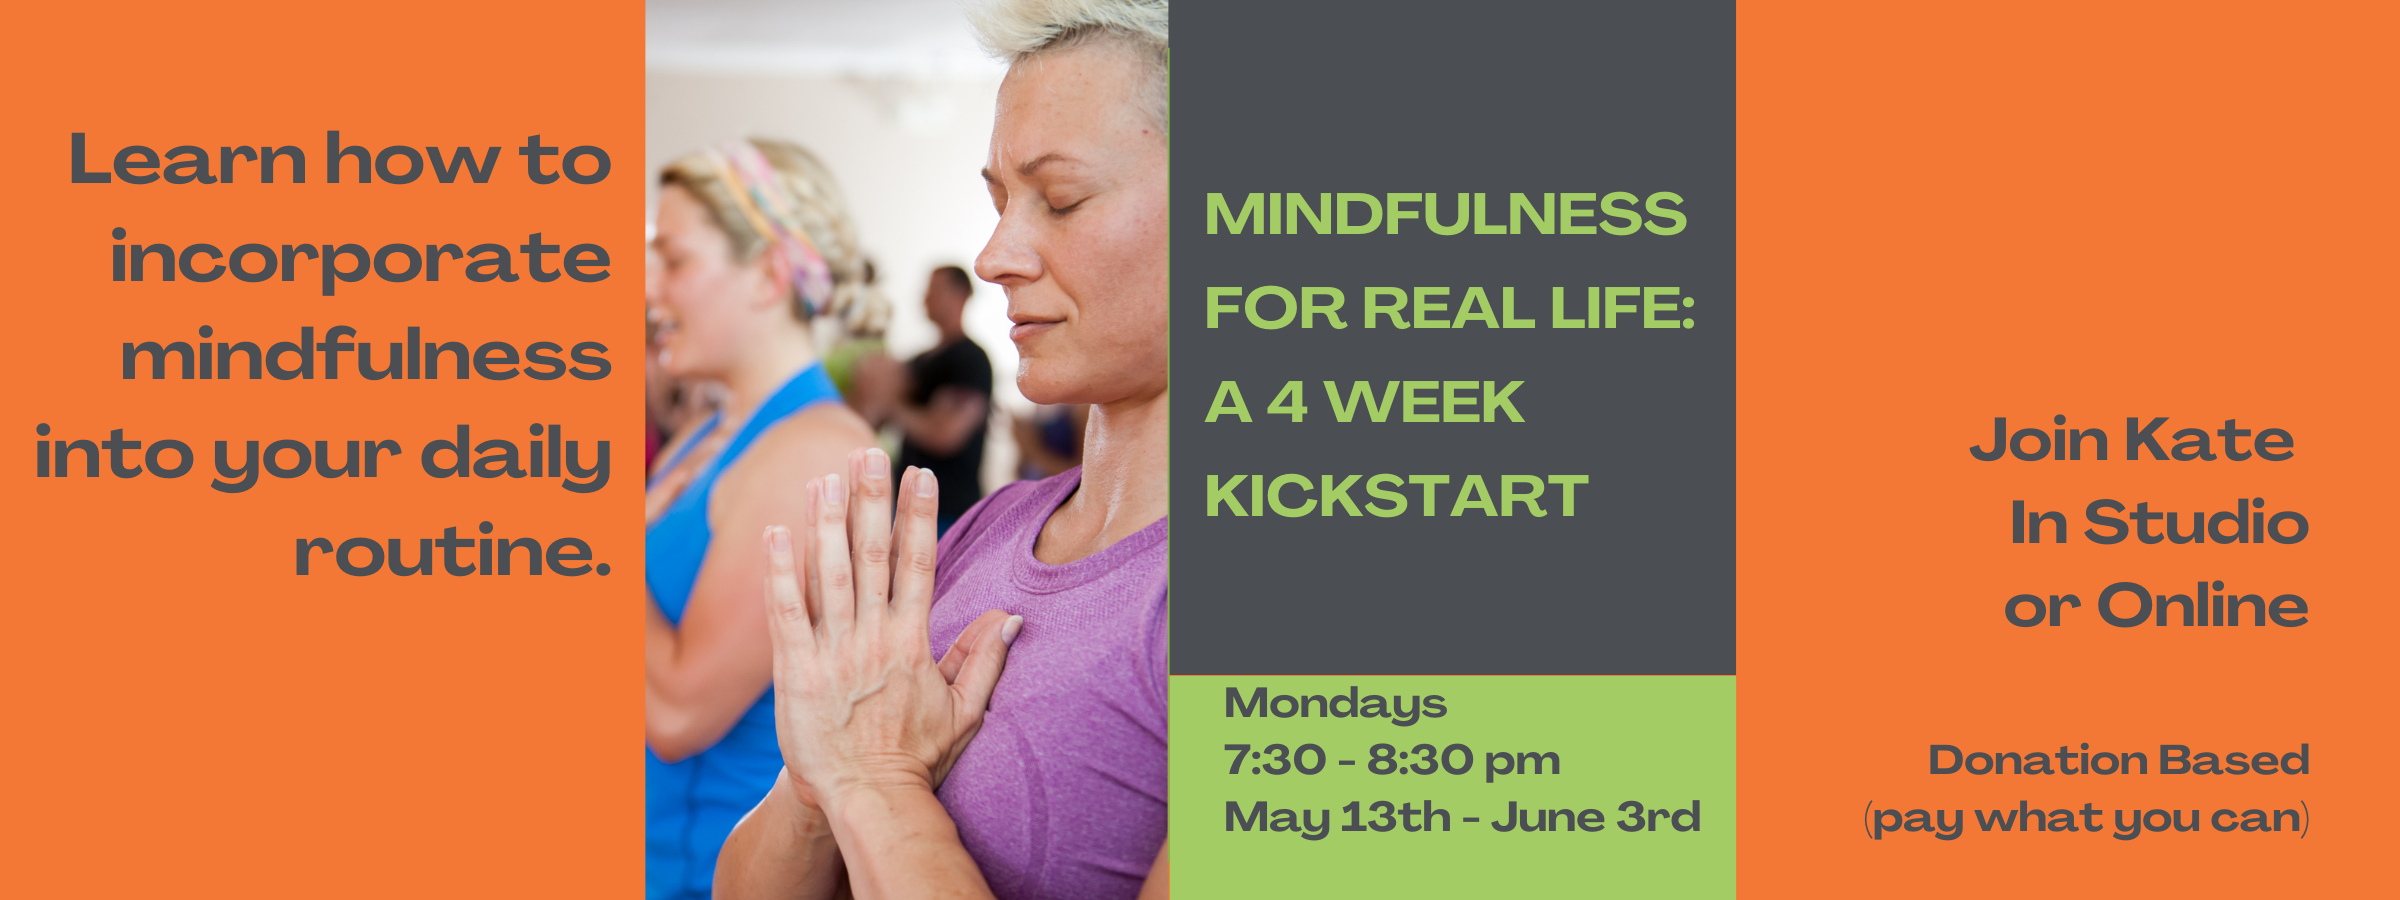 Mindfulness for Real Life a 4 Week Kickstart 2400 x 900 px